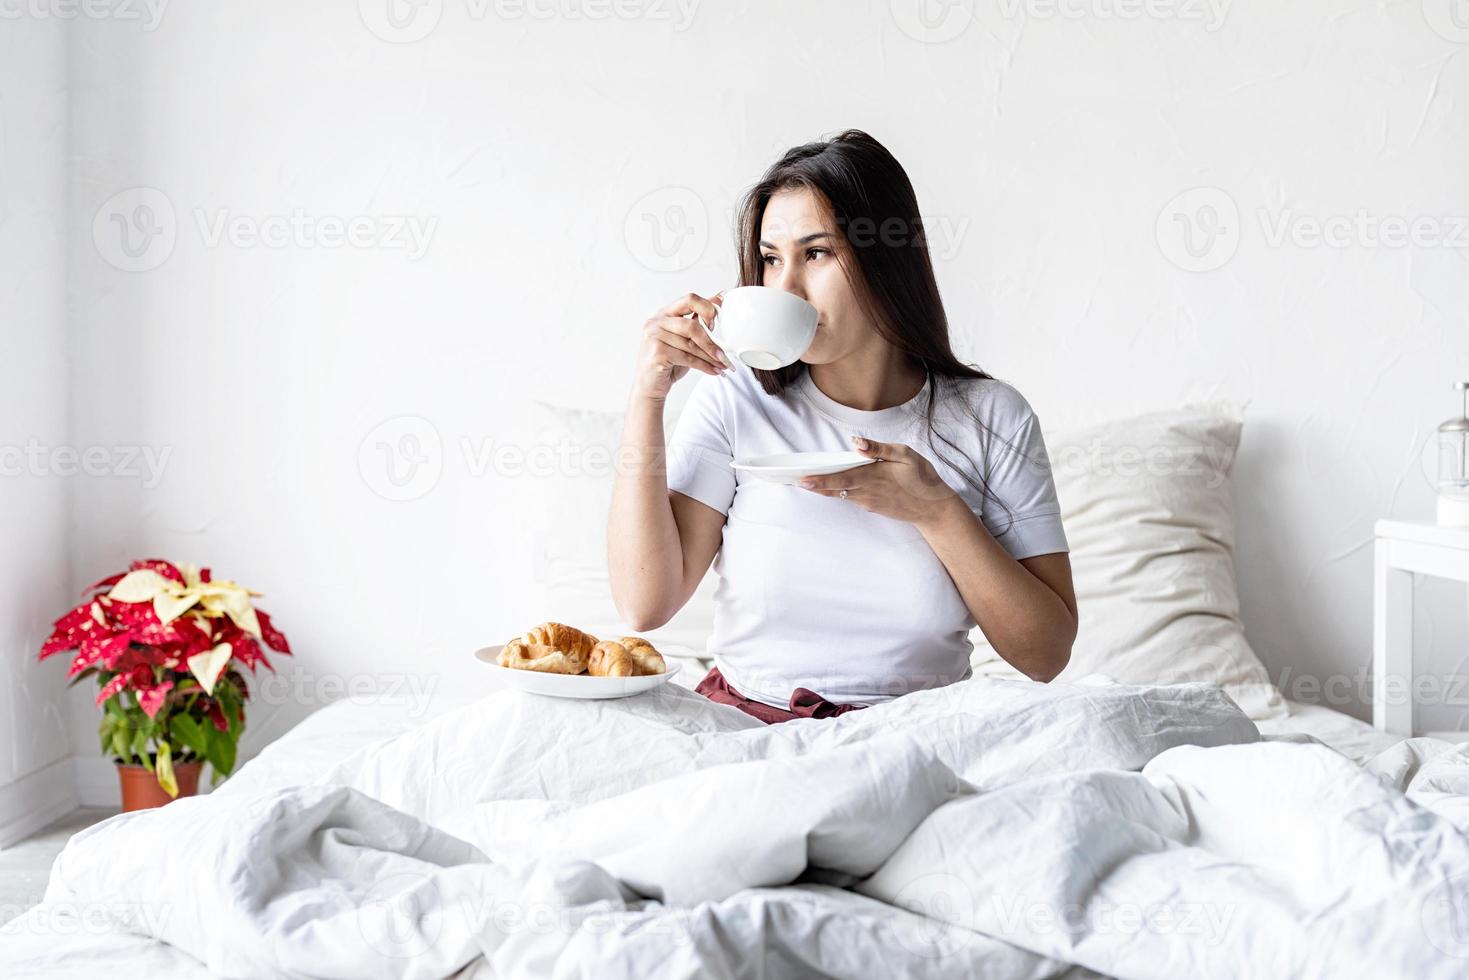 giovane donna bruna seduta sveglia nel letto con palloncini e decorazioni a forma di cuore rosso che bevono caffè mangiando croissant foto